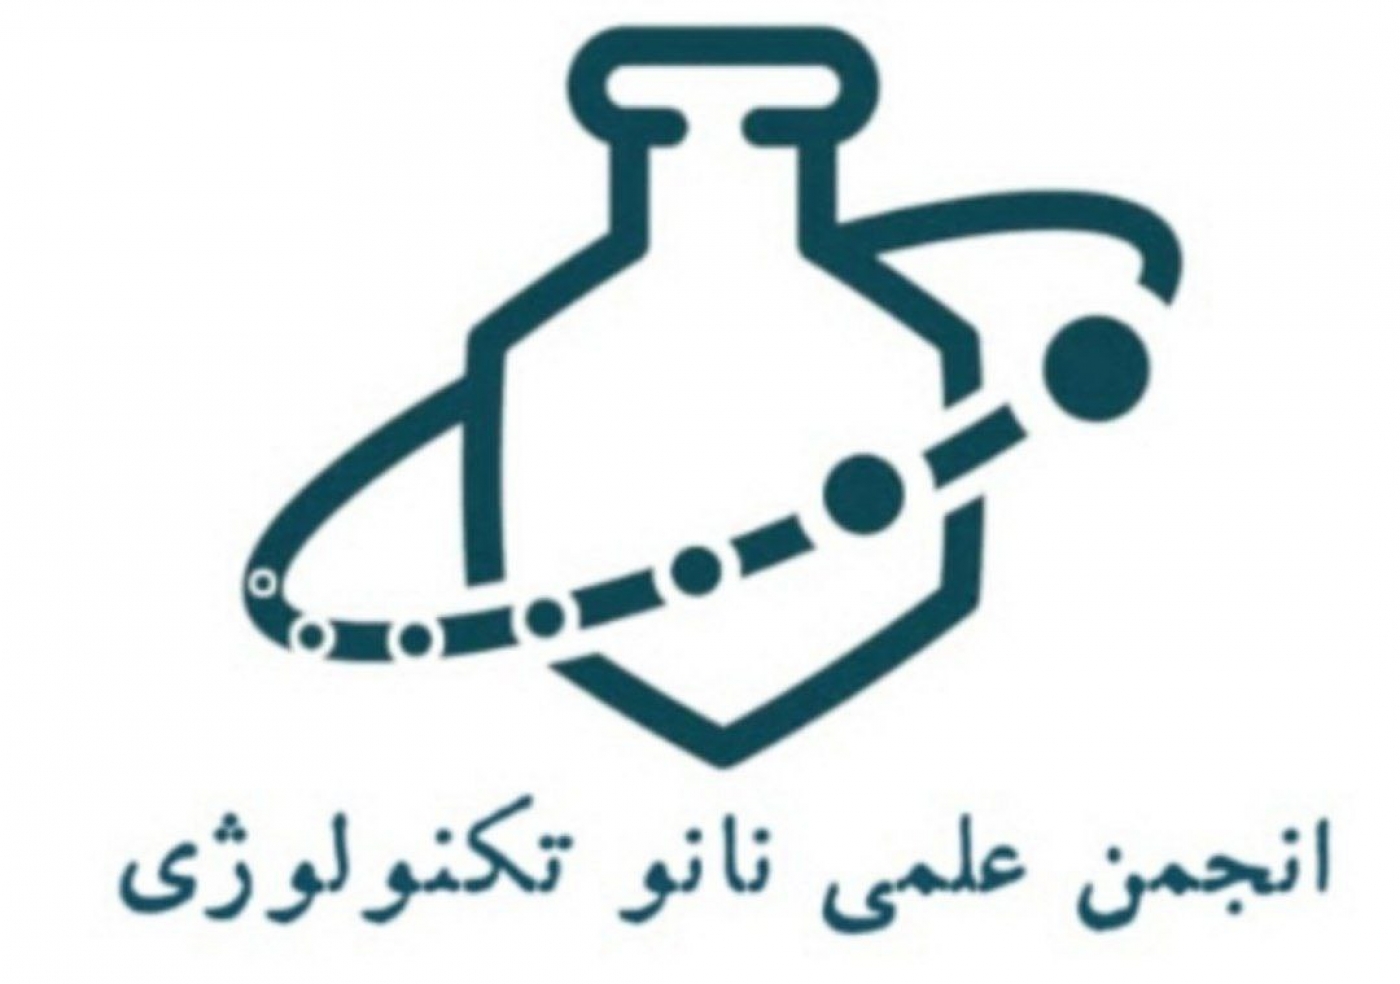 انجمن نانو تکنولوژی دانشگاه آزاد اسلامی واحد مشهد